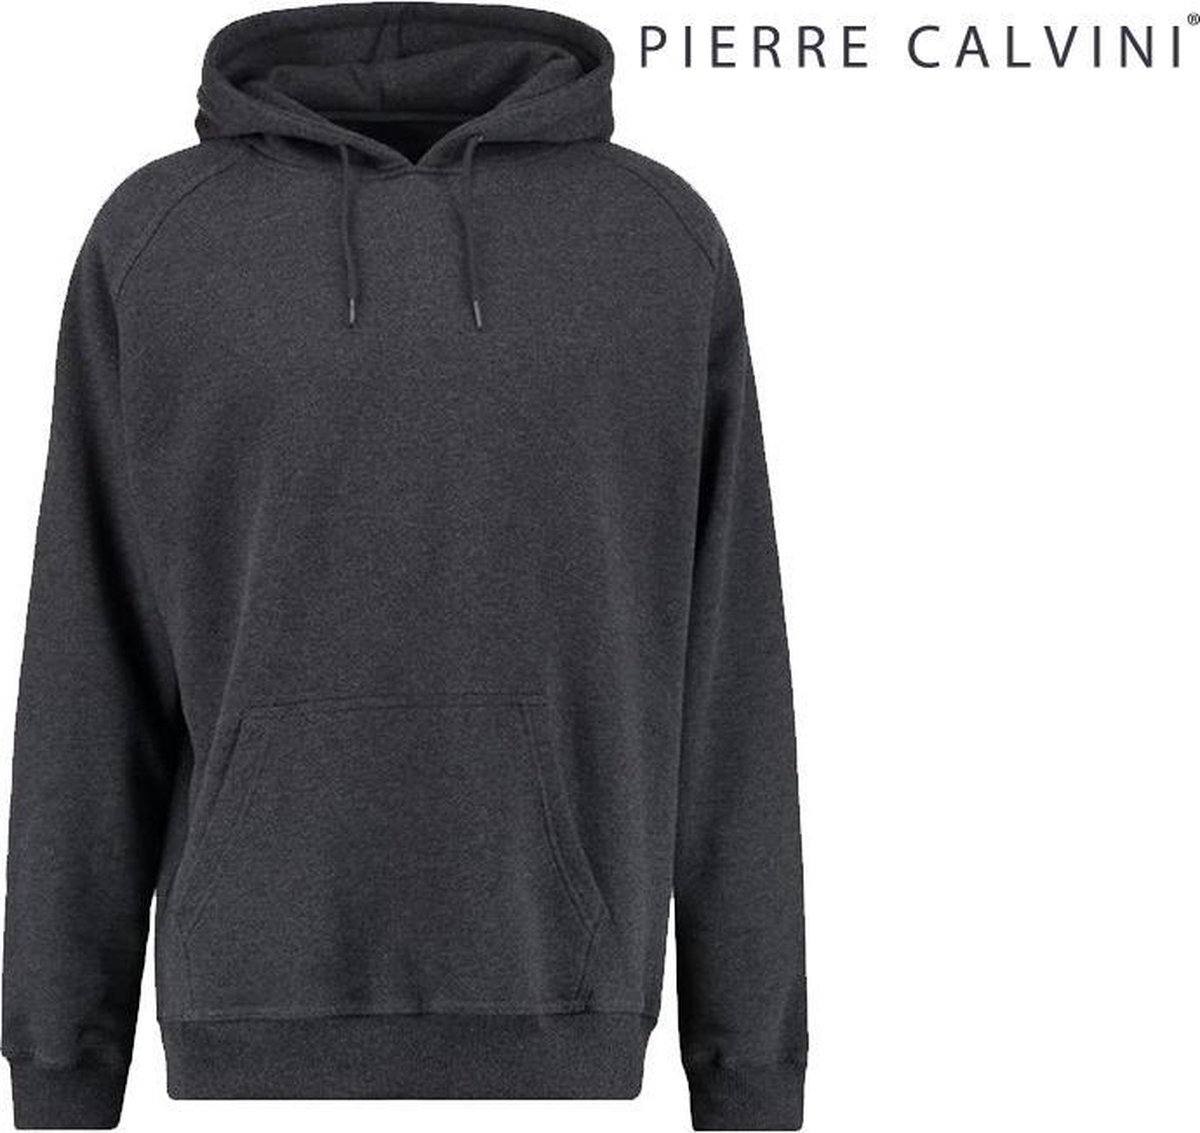 Pierre Calvini - Hoodie Heren Trui - Sweater Heren Met Capuchon - Antraciet - XL